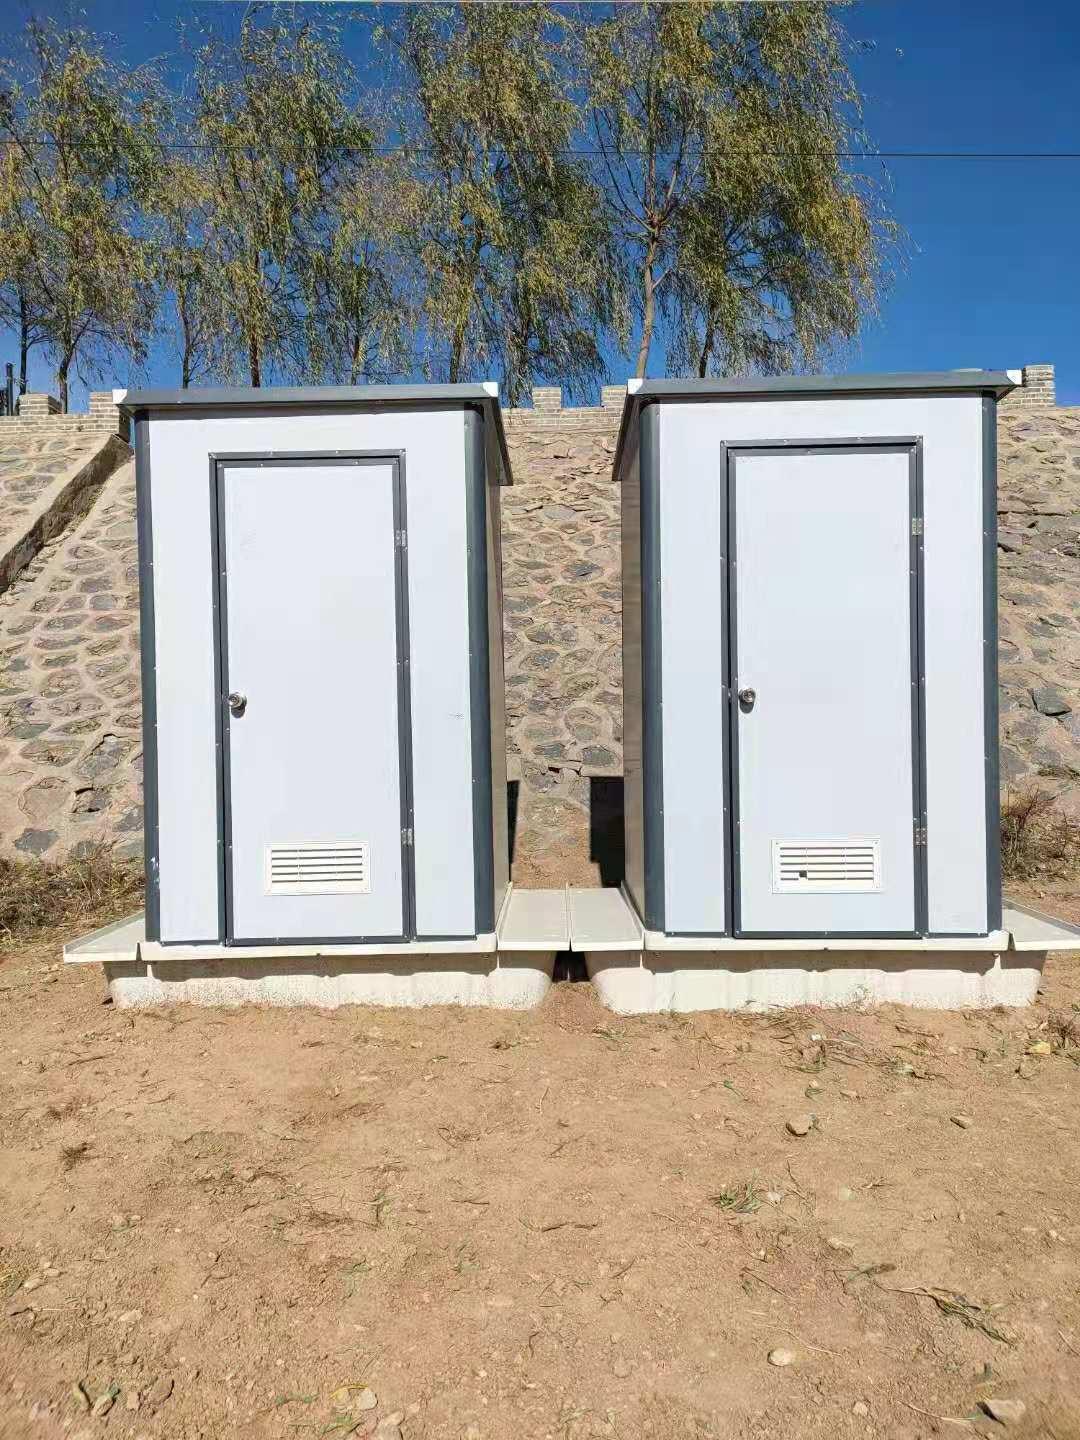 彩钢厕屋 移动式卫生间简易移动厕所农村厕改用泡沫板移动厕所